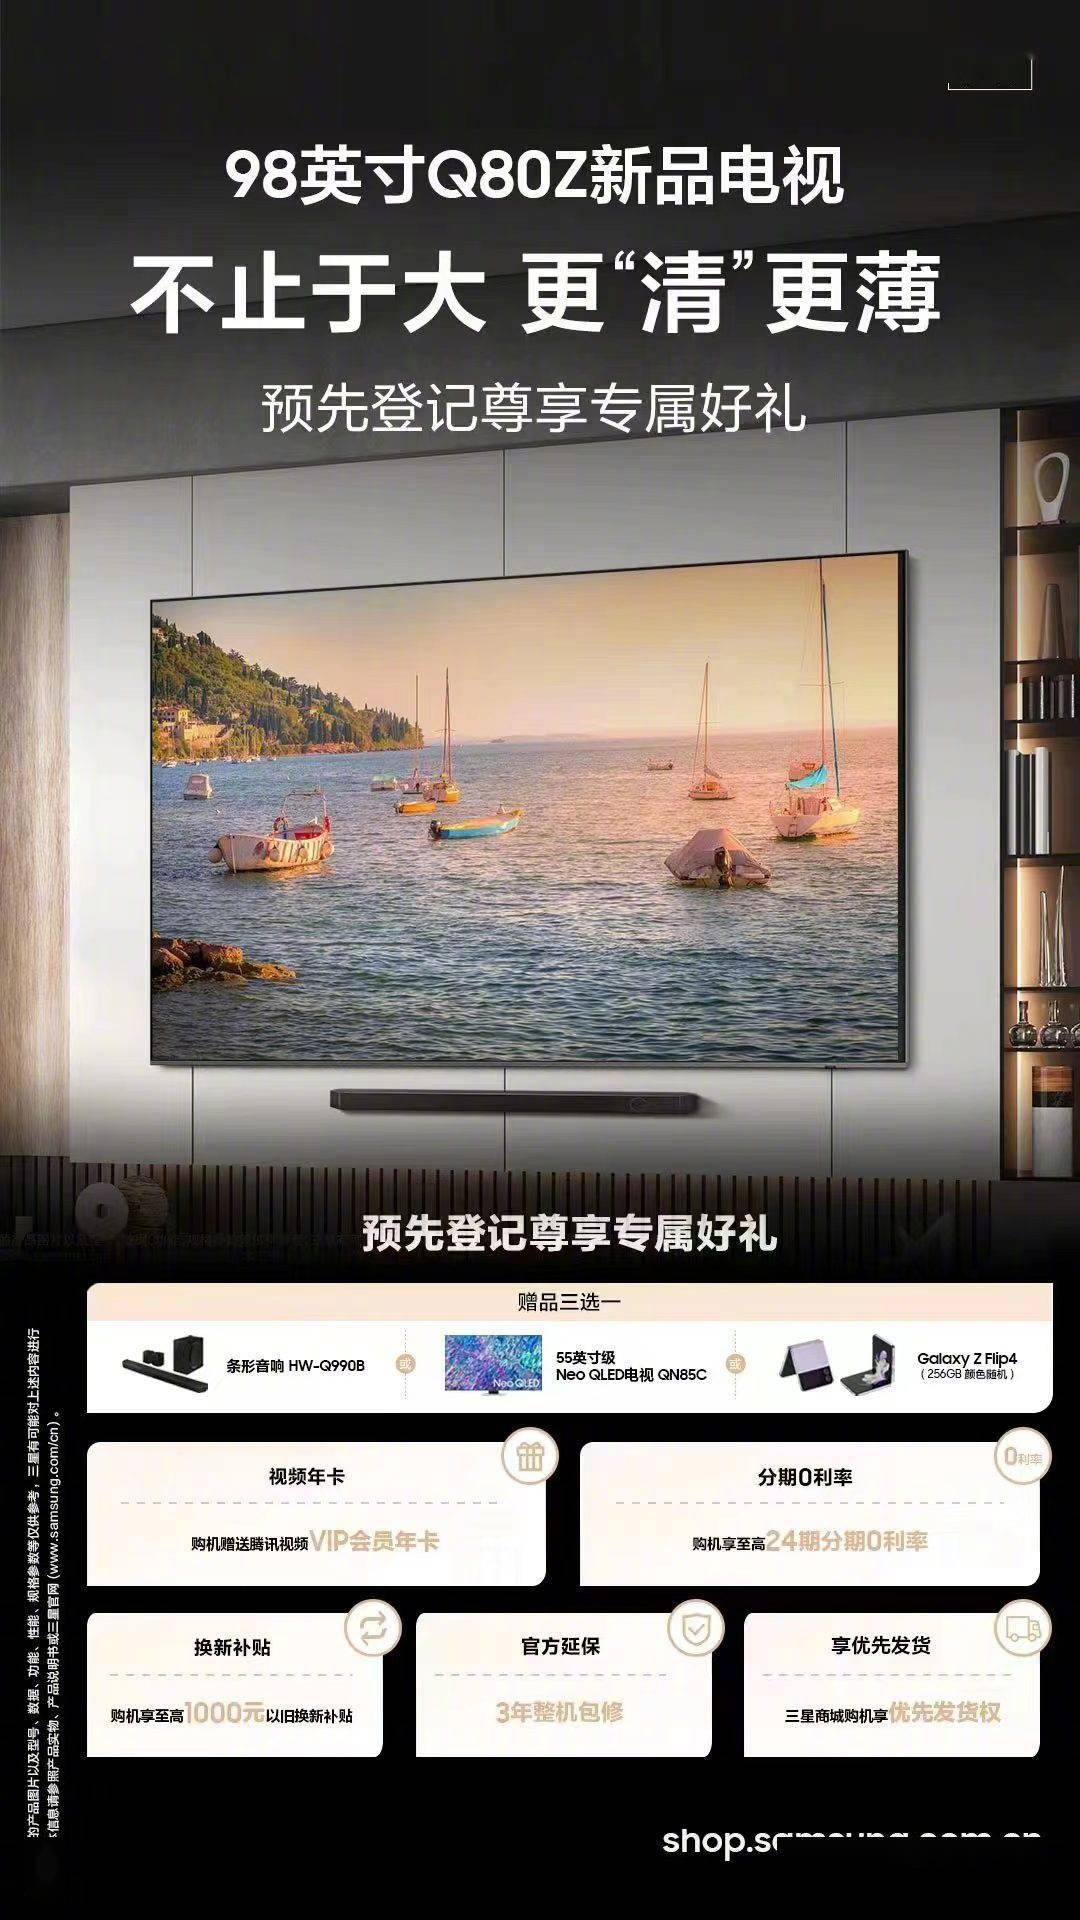 三星推出98英寸级Q80Z电视新品 目前并未公布这款电视的参数核定价等信息